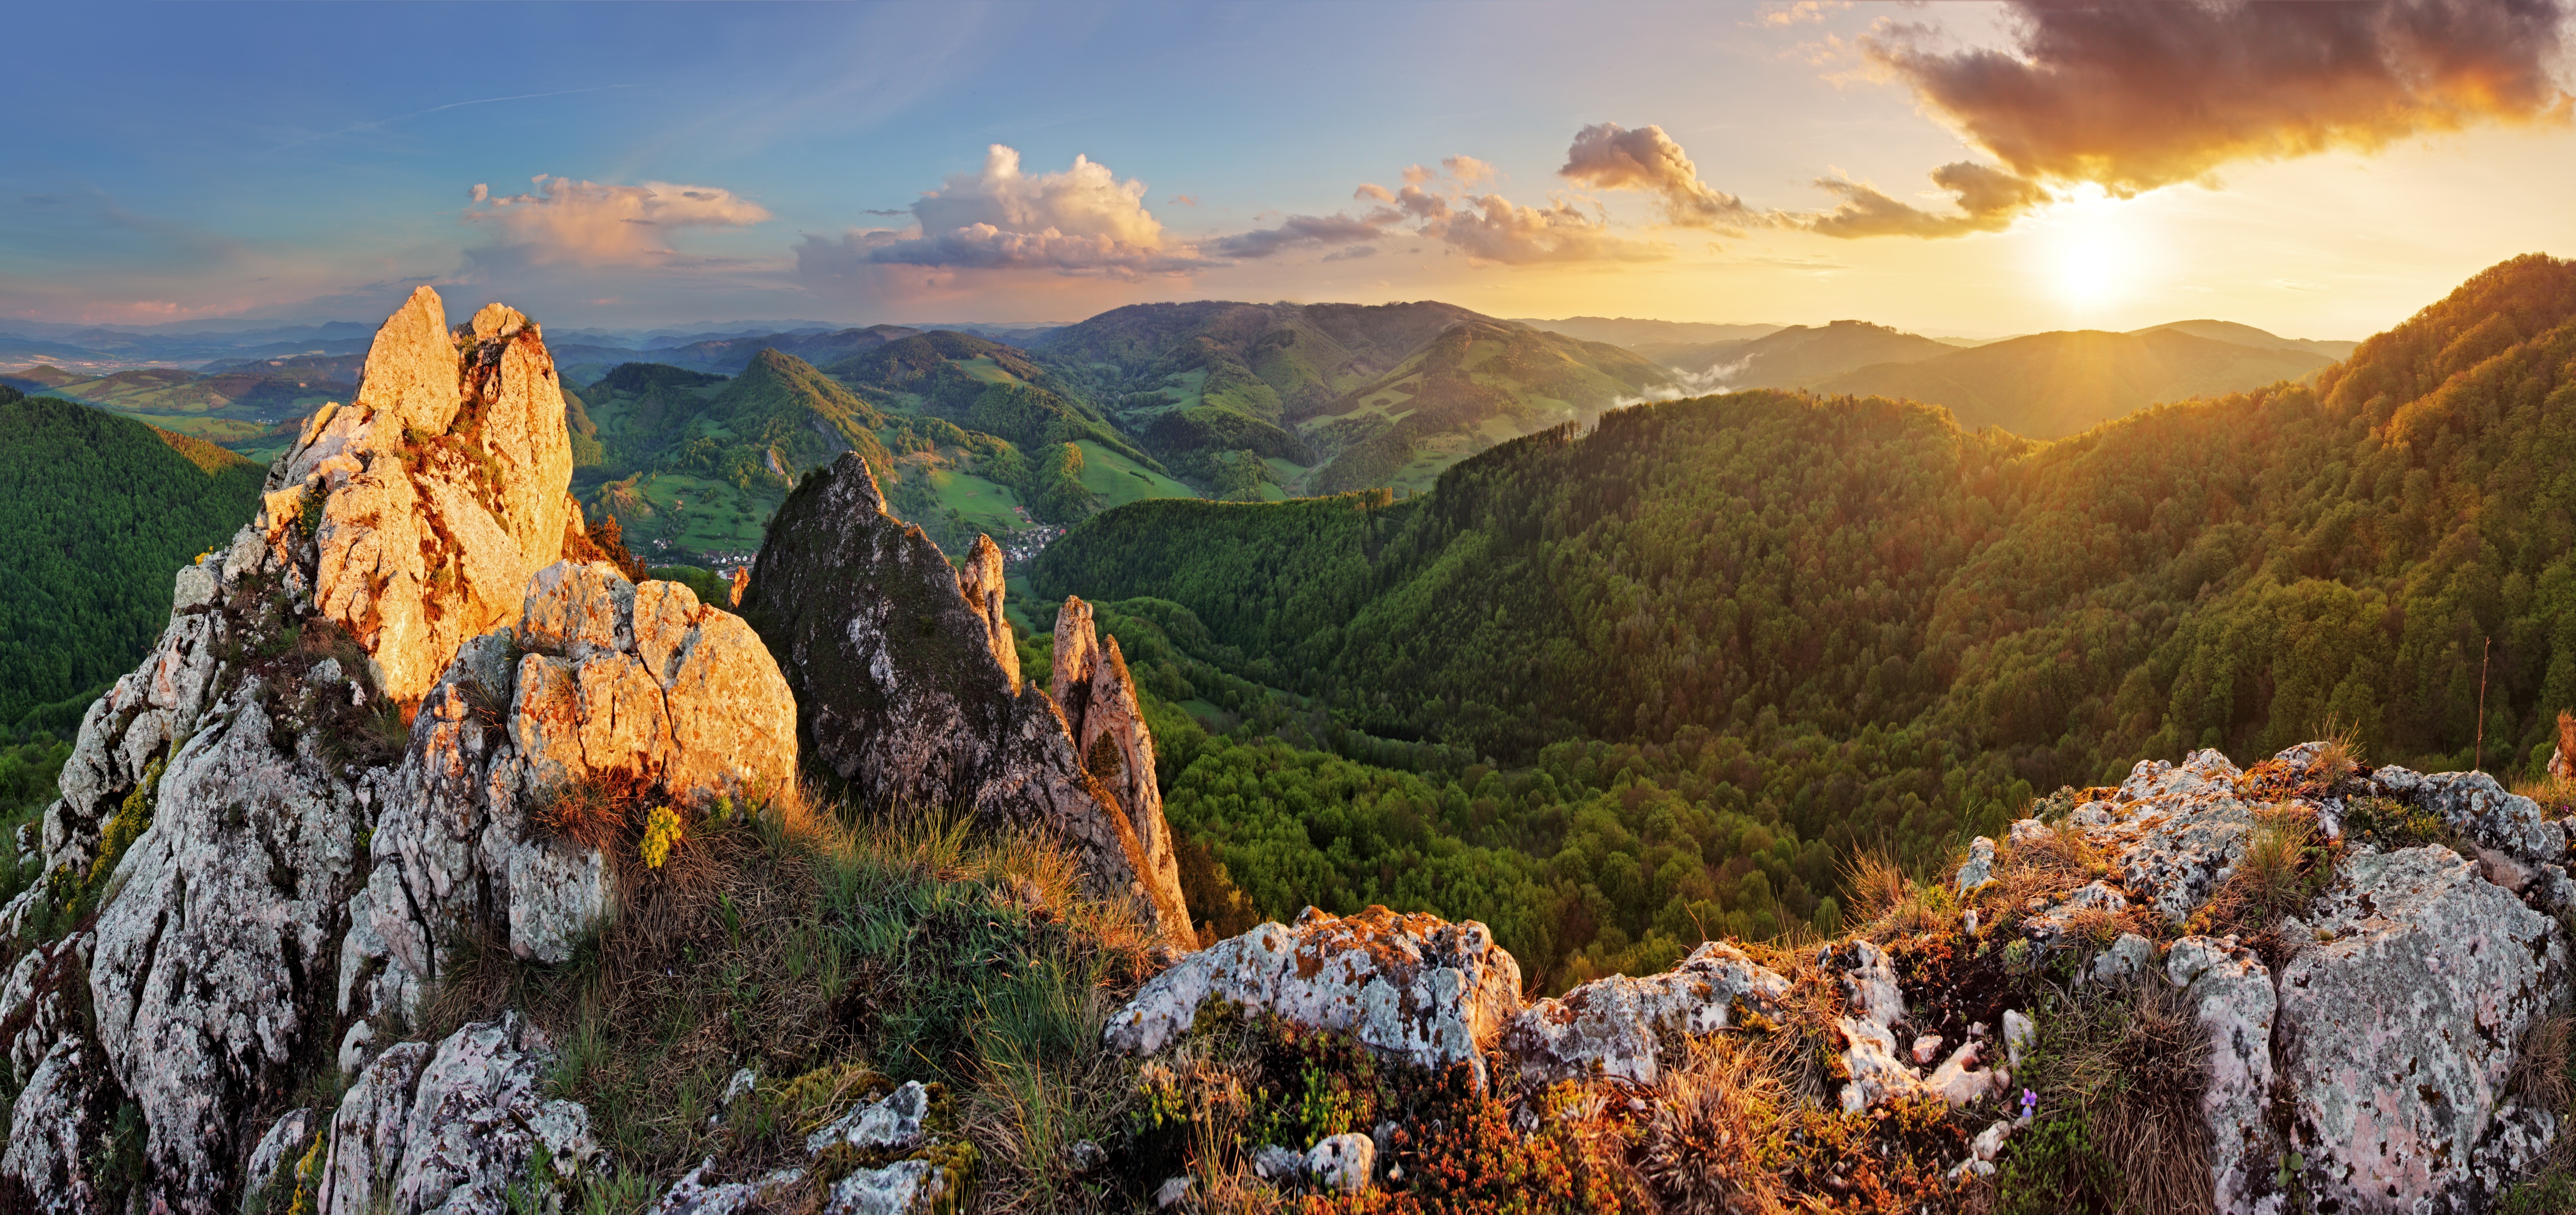 Nature Mountain Rock Landscape Sunset Hill Wallpapers Hd Desktop